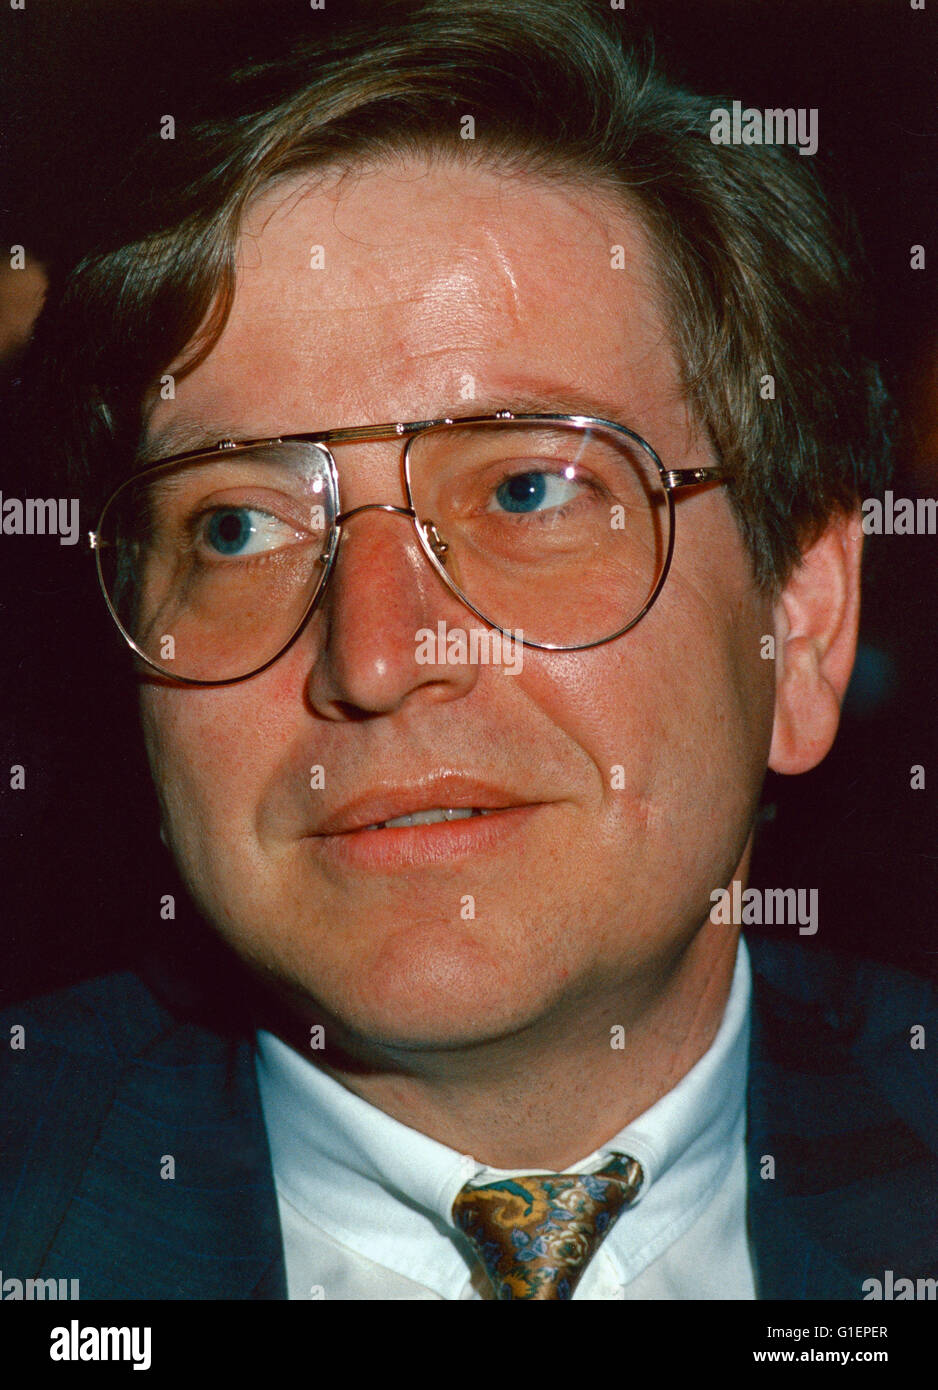 Der Deutsche CSU-Politiker Thomas Goppel Beim Deutschen Videokongress 1989, 1980er Jahre. Deutscher Politiker Thomas Goppel (CSU); Deutschland der 1980er Jahre. Stockfoto